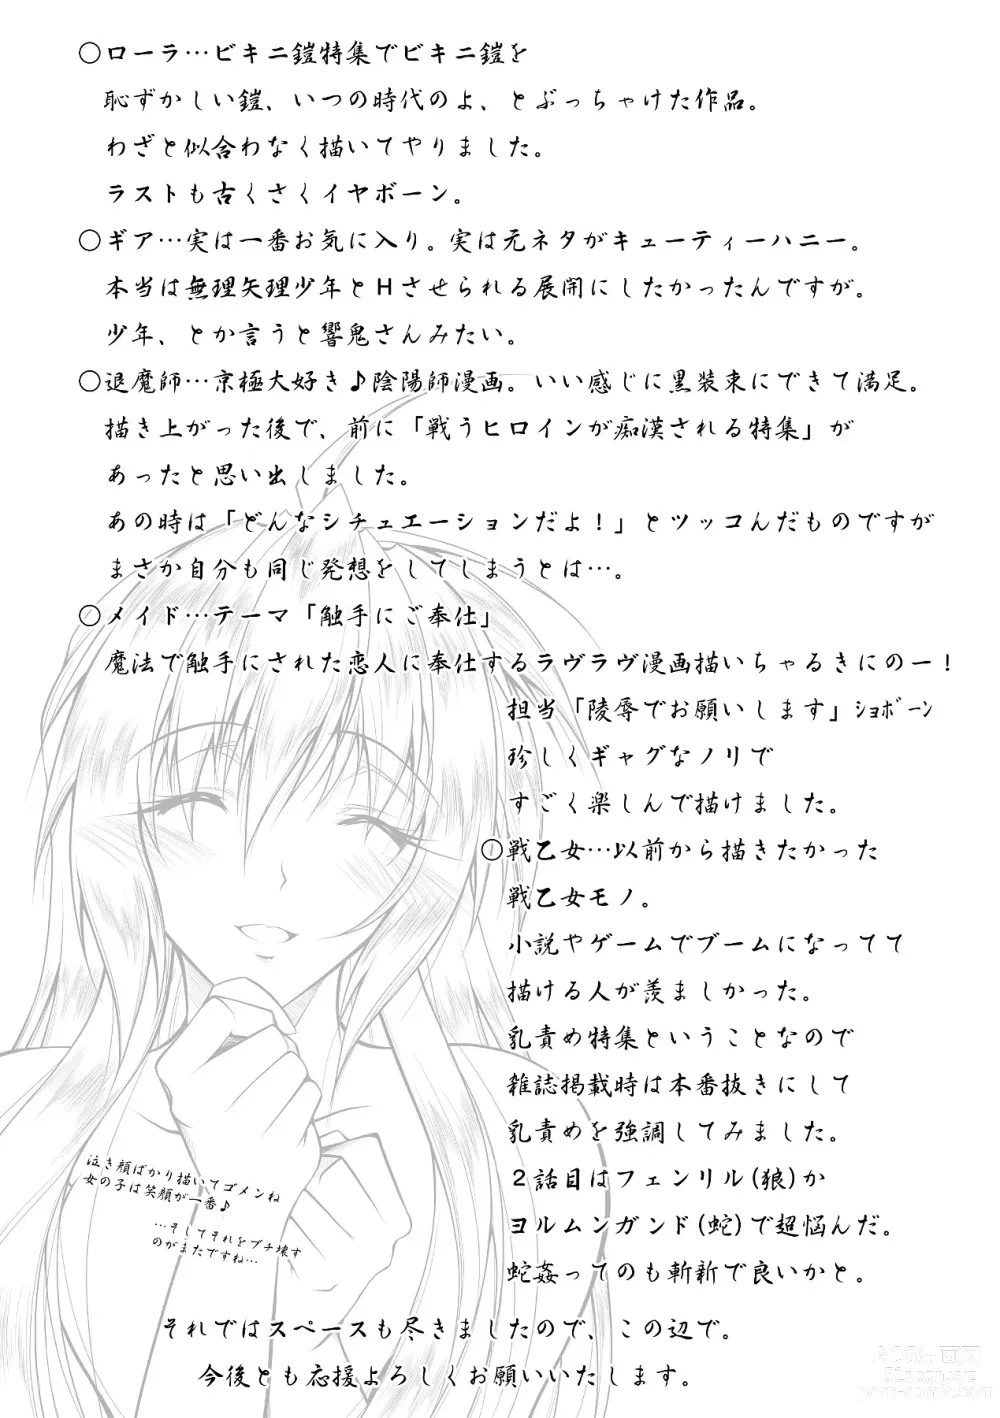 Page 175 of manga Datenshi-tachi no Rhapsody - Fallen Angels Rhapsody